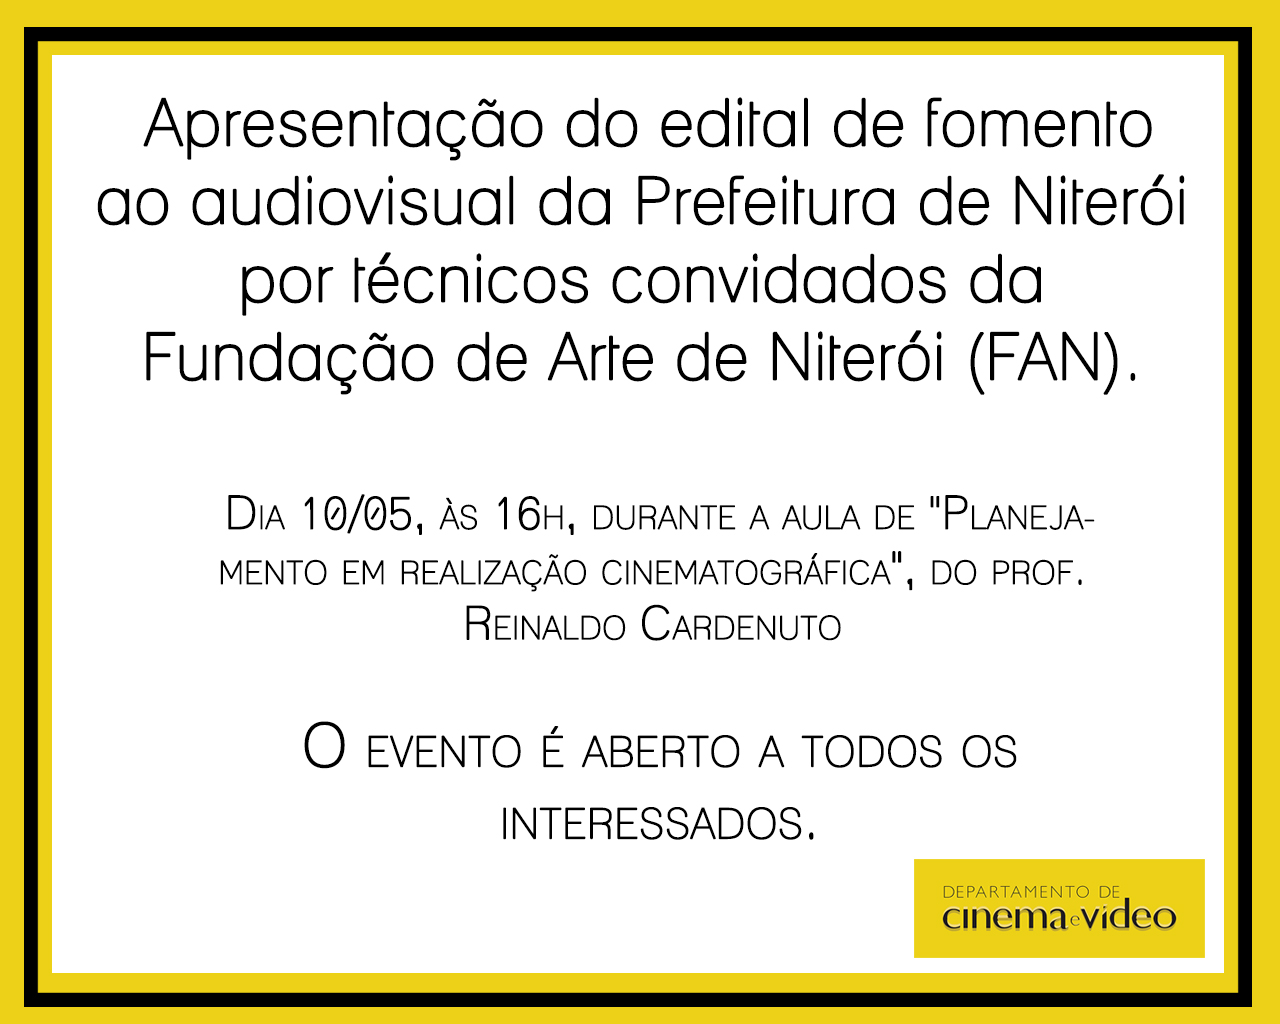 Aviso sobre evento do edital de Niterói